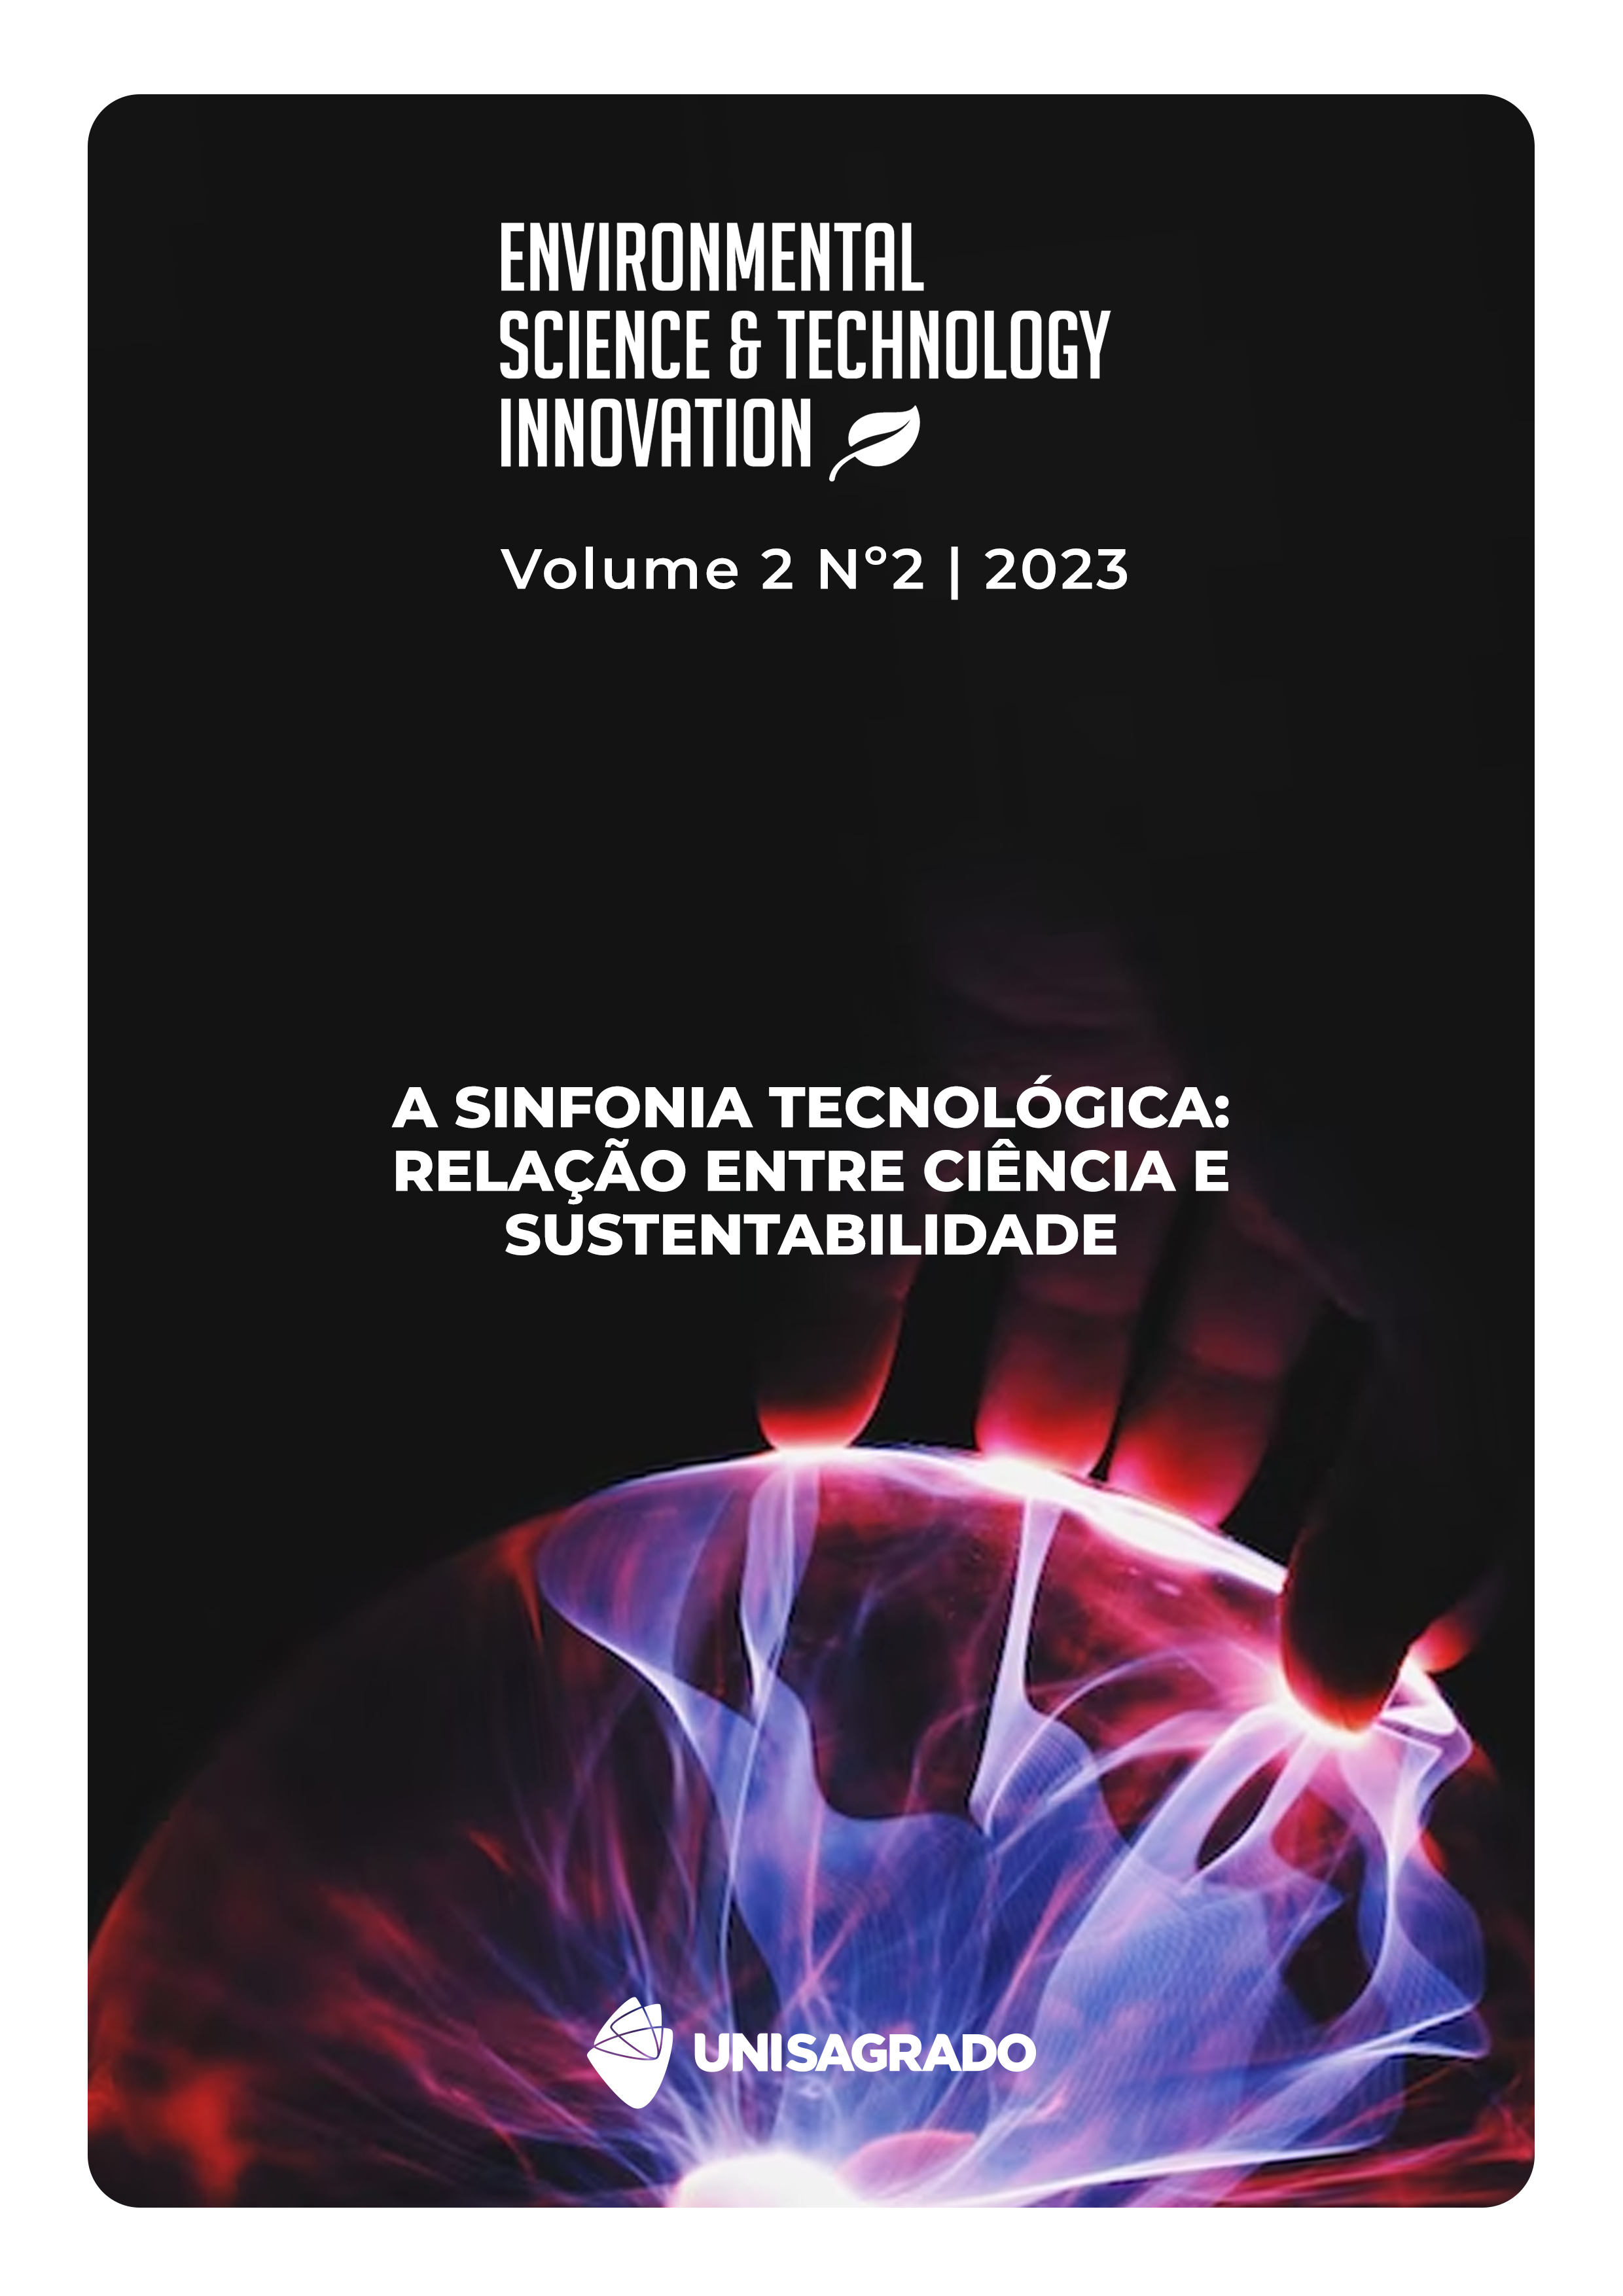 					View Vol. 2 No. 2 (2023): A sinfonia tecnológica: relação entre ciência e sustentabilidade
				